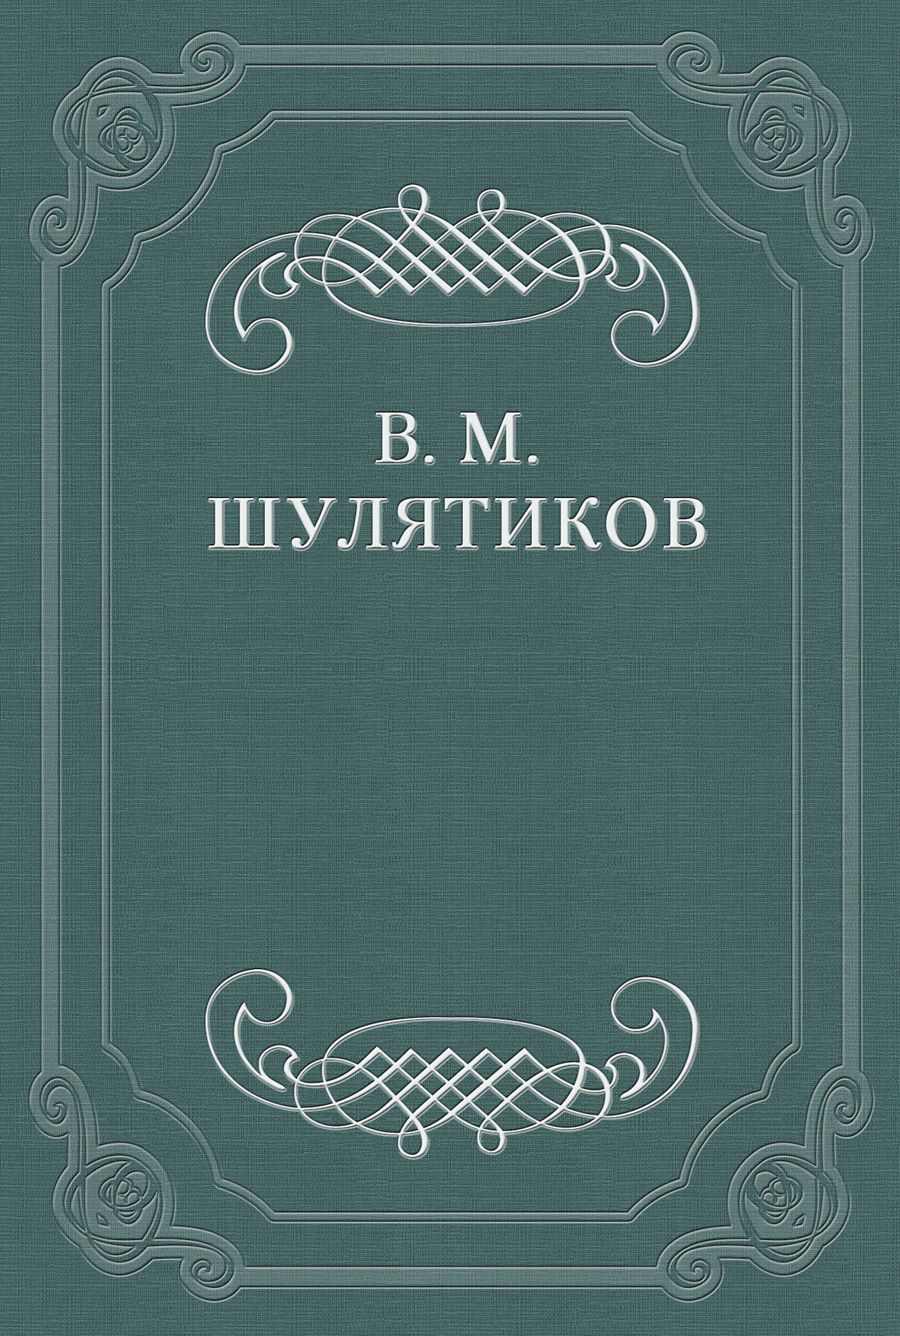 Книга Новая повесть В. Вересаевa из серии , созданная Владимир Шулятиков, может относится к жанру Критика. Стоимость книги Новая повесть В. Вересаевa  с идентификатором 662415 составляет 9.99 руб.